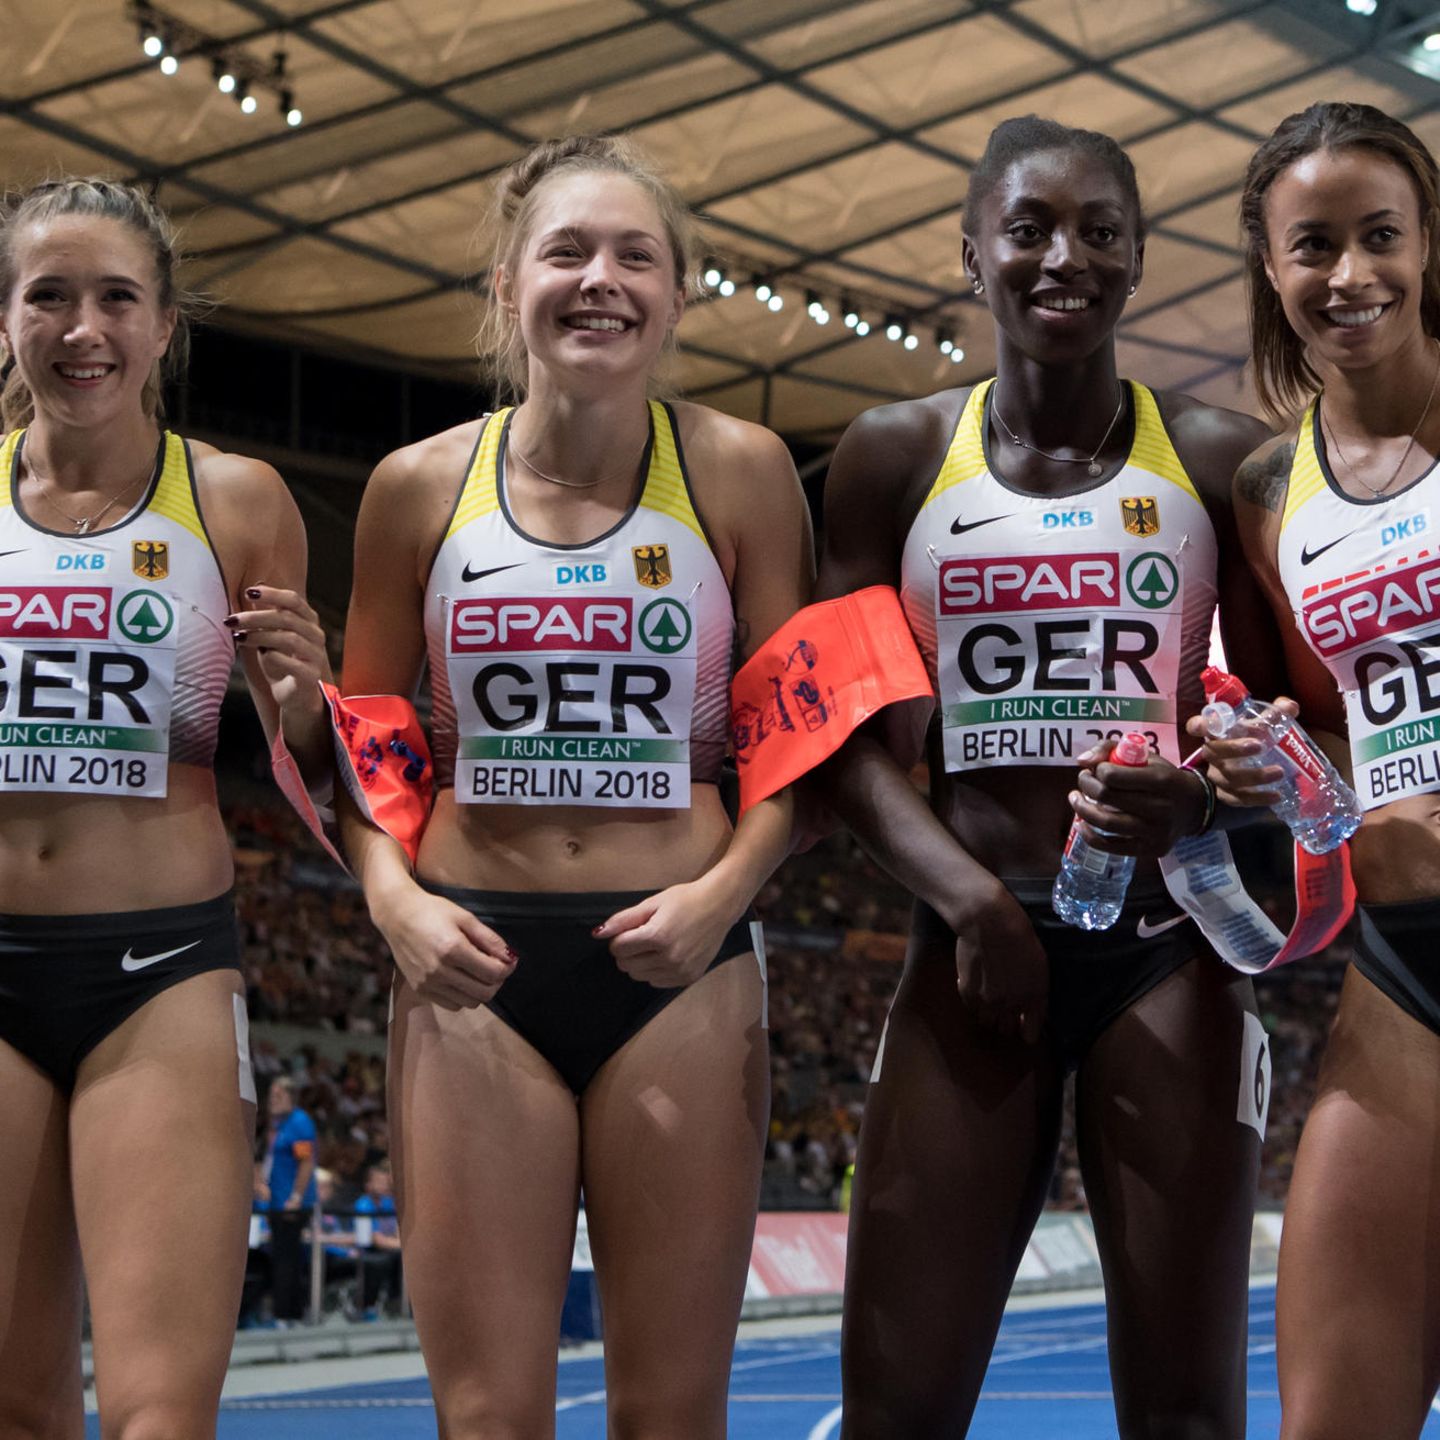 ZDF-Tweet zu Leichtathletik-Staffel Sender reagiert auf Sexismus-Vorwurf STERN.de